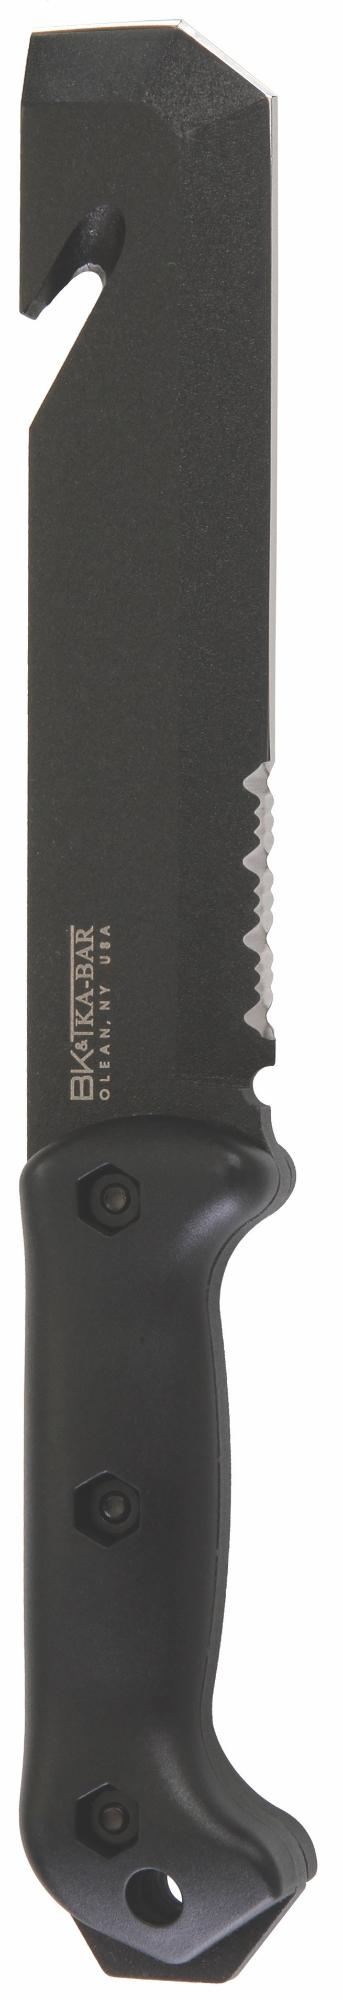 Ka-Bar Becker TacTool BK3 7in 1095 Cro-Van Steel Blade Fixed Blade Knife